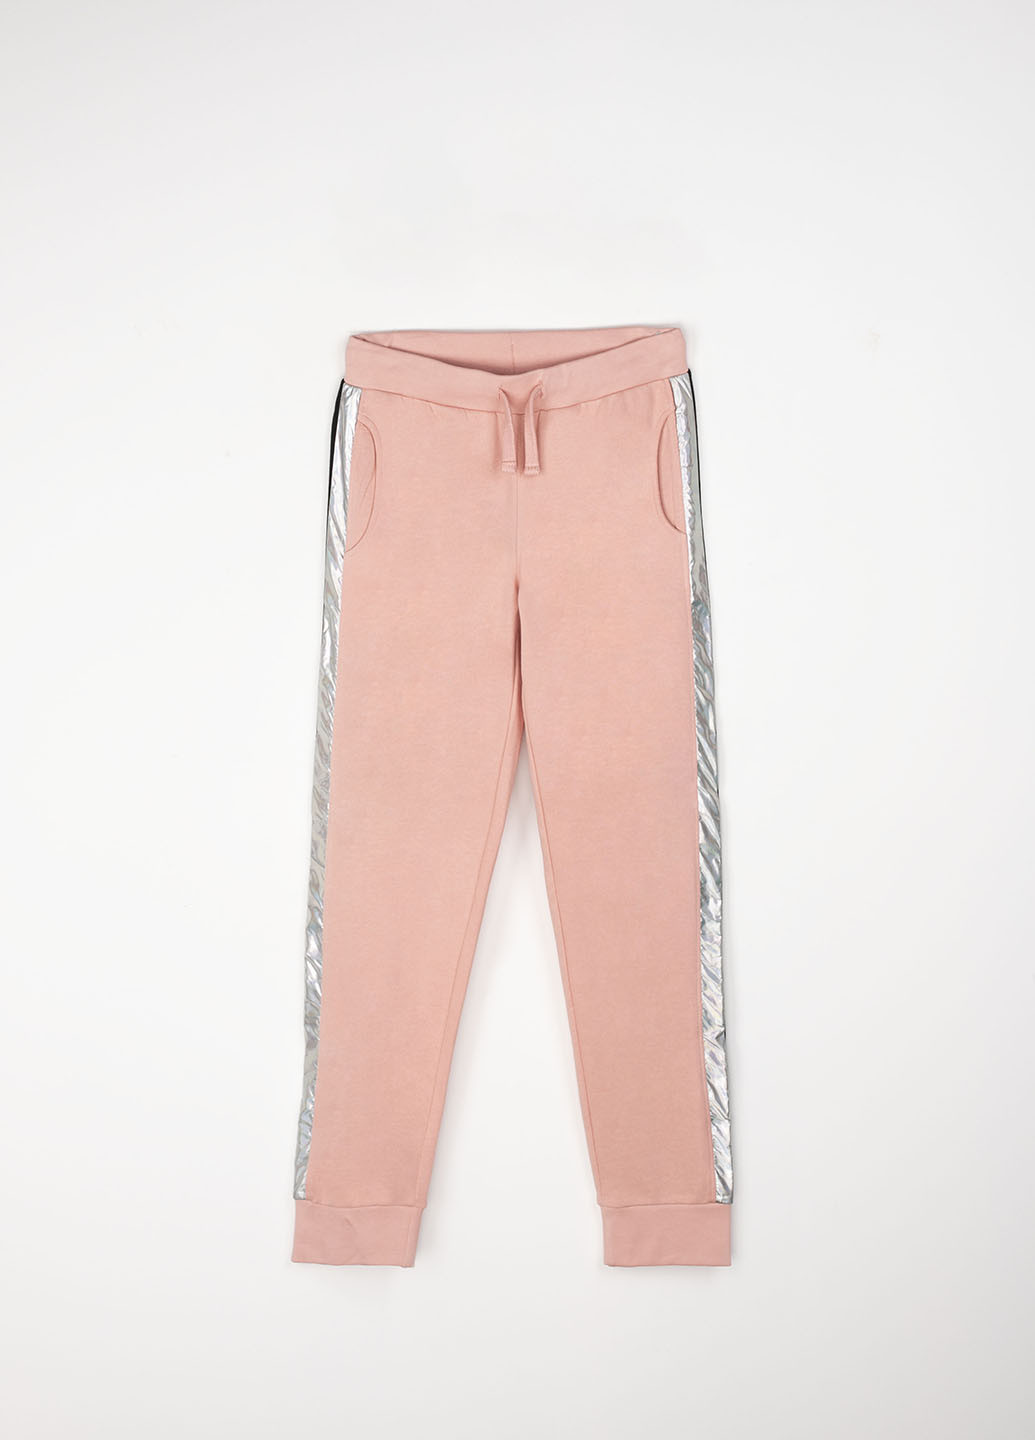 Светло-розовые спортивные демисезонные джоггеры брюки Coccodrillo